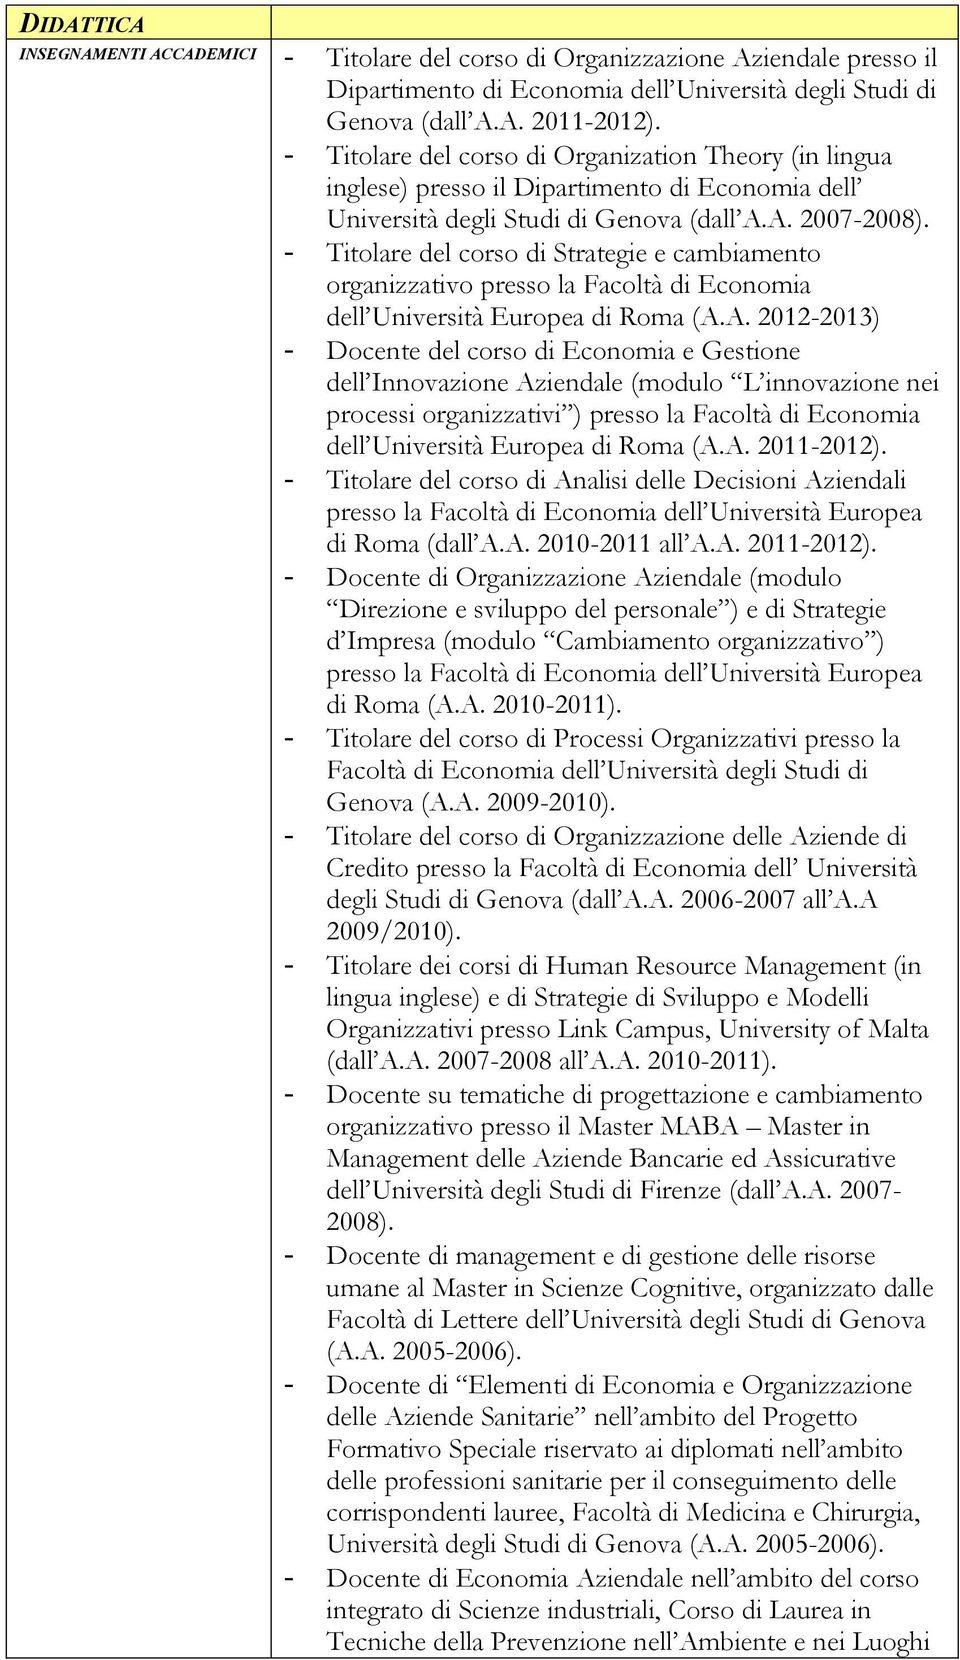 - Titolare del corso di Strategie e cambiamento organizzativo presso la Facoltà di Economia dell Università Europea di Roma (A.